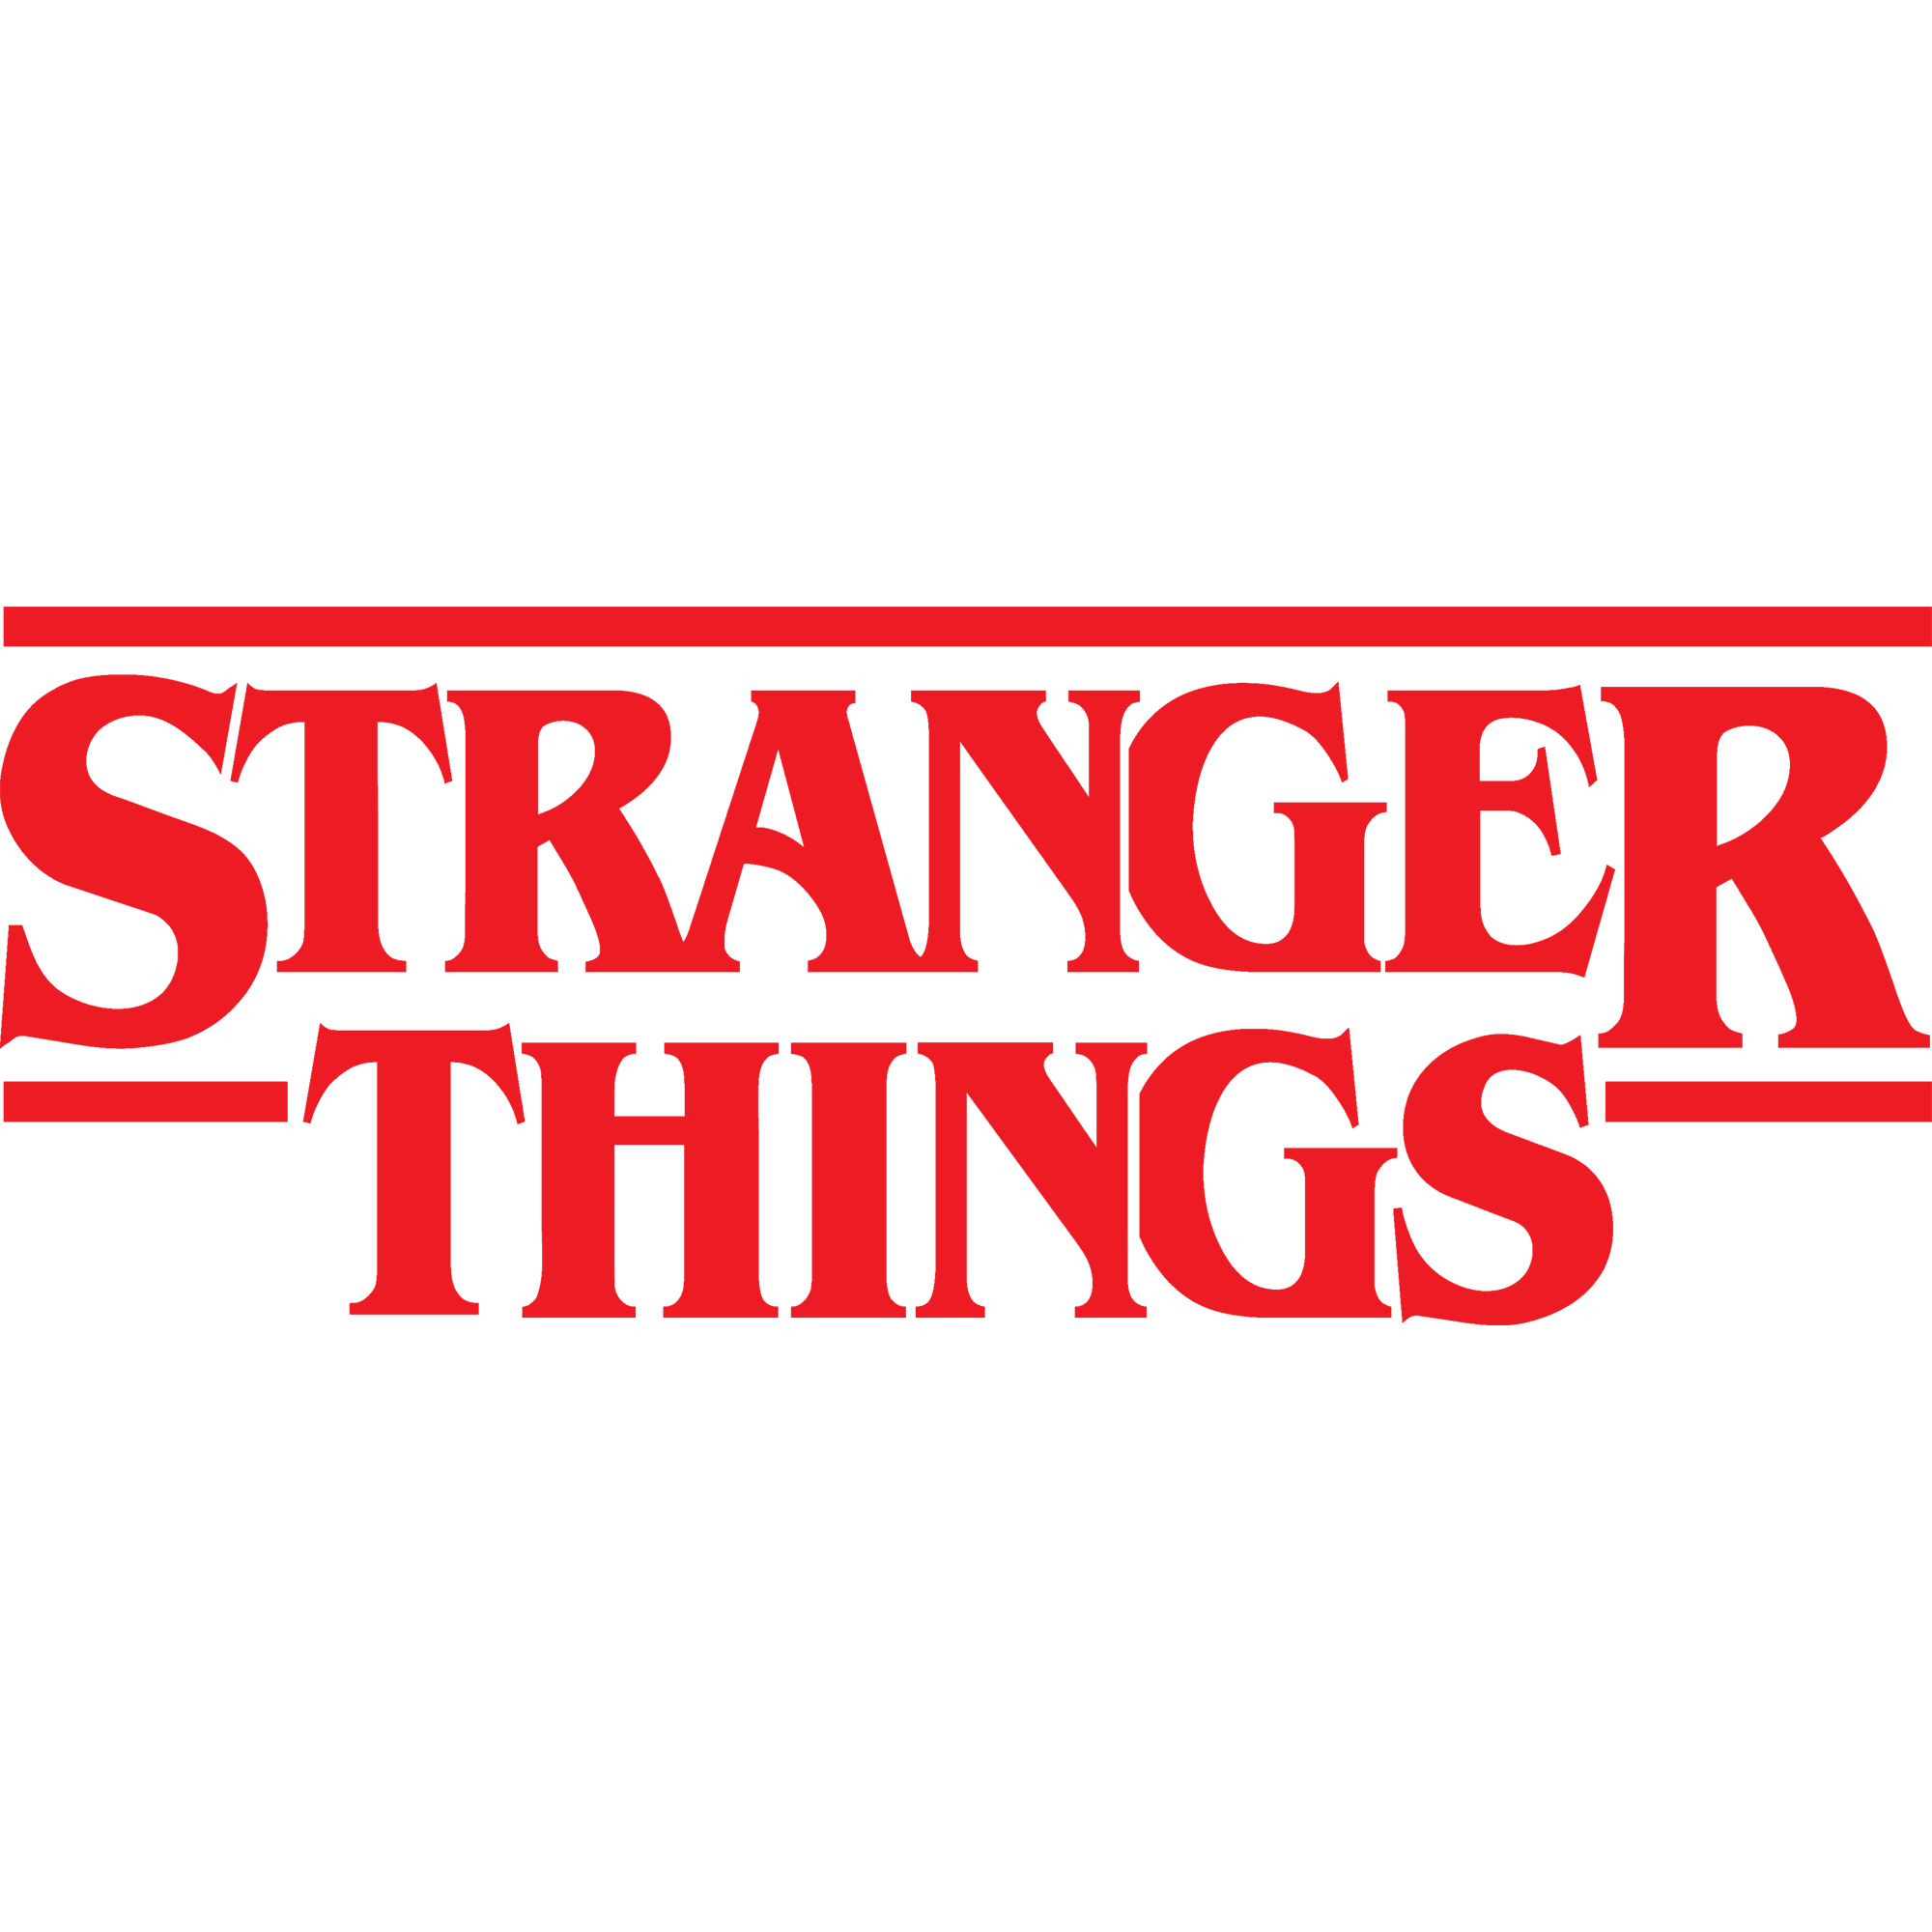 Stranger Things Logo Transparent Image